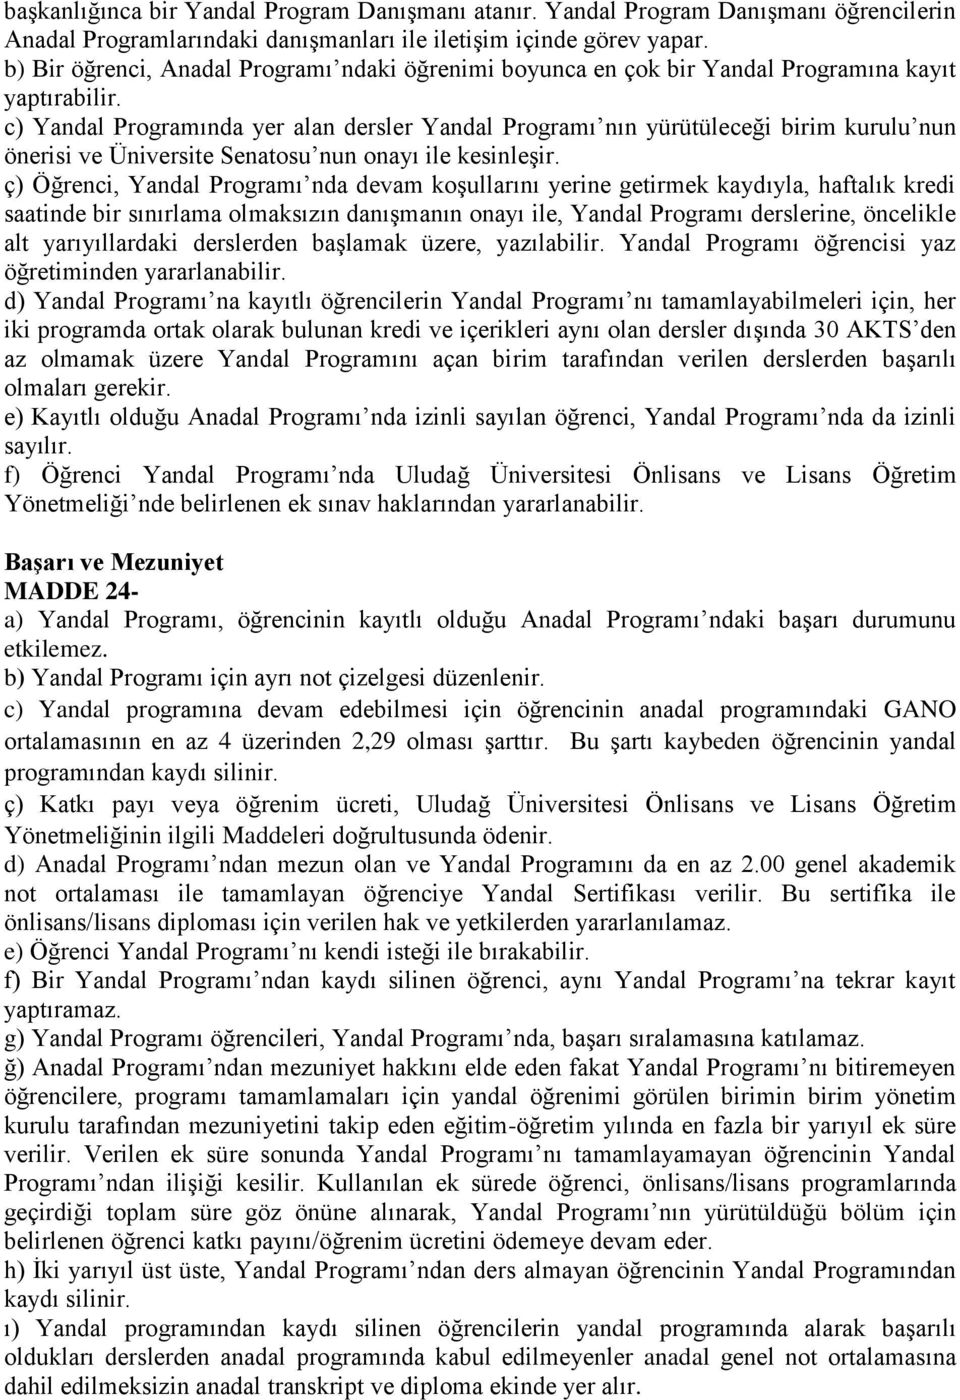 c) Yandal Programında yer alan dersler Yandal Programı nın yürütüleceği birim kurulu nun önerisi ve Üniversite Senatosu nun onayı ile kesinleşir.